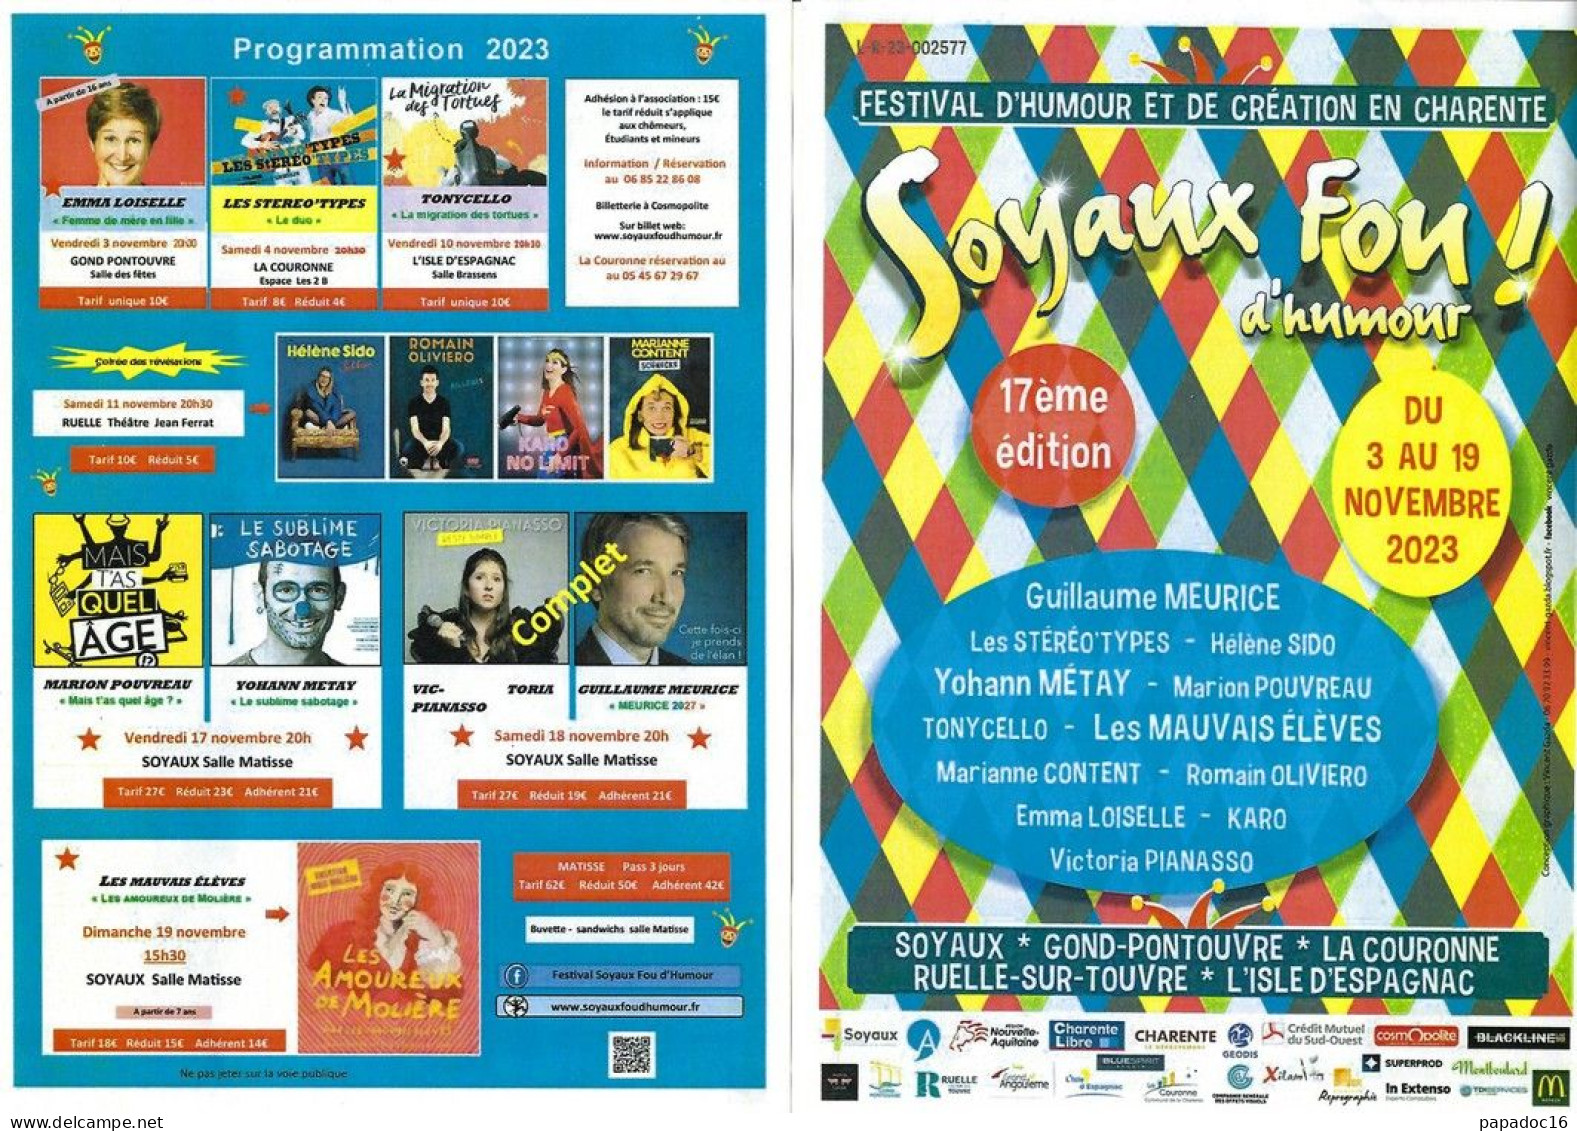 Flyer - Soyaux Fou D'humour ! - 17e Festival D'humour Et De Création En Charente - 3-19 Novembre 2023 - Advertising